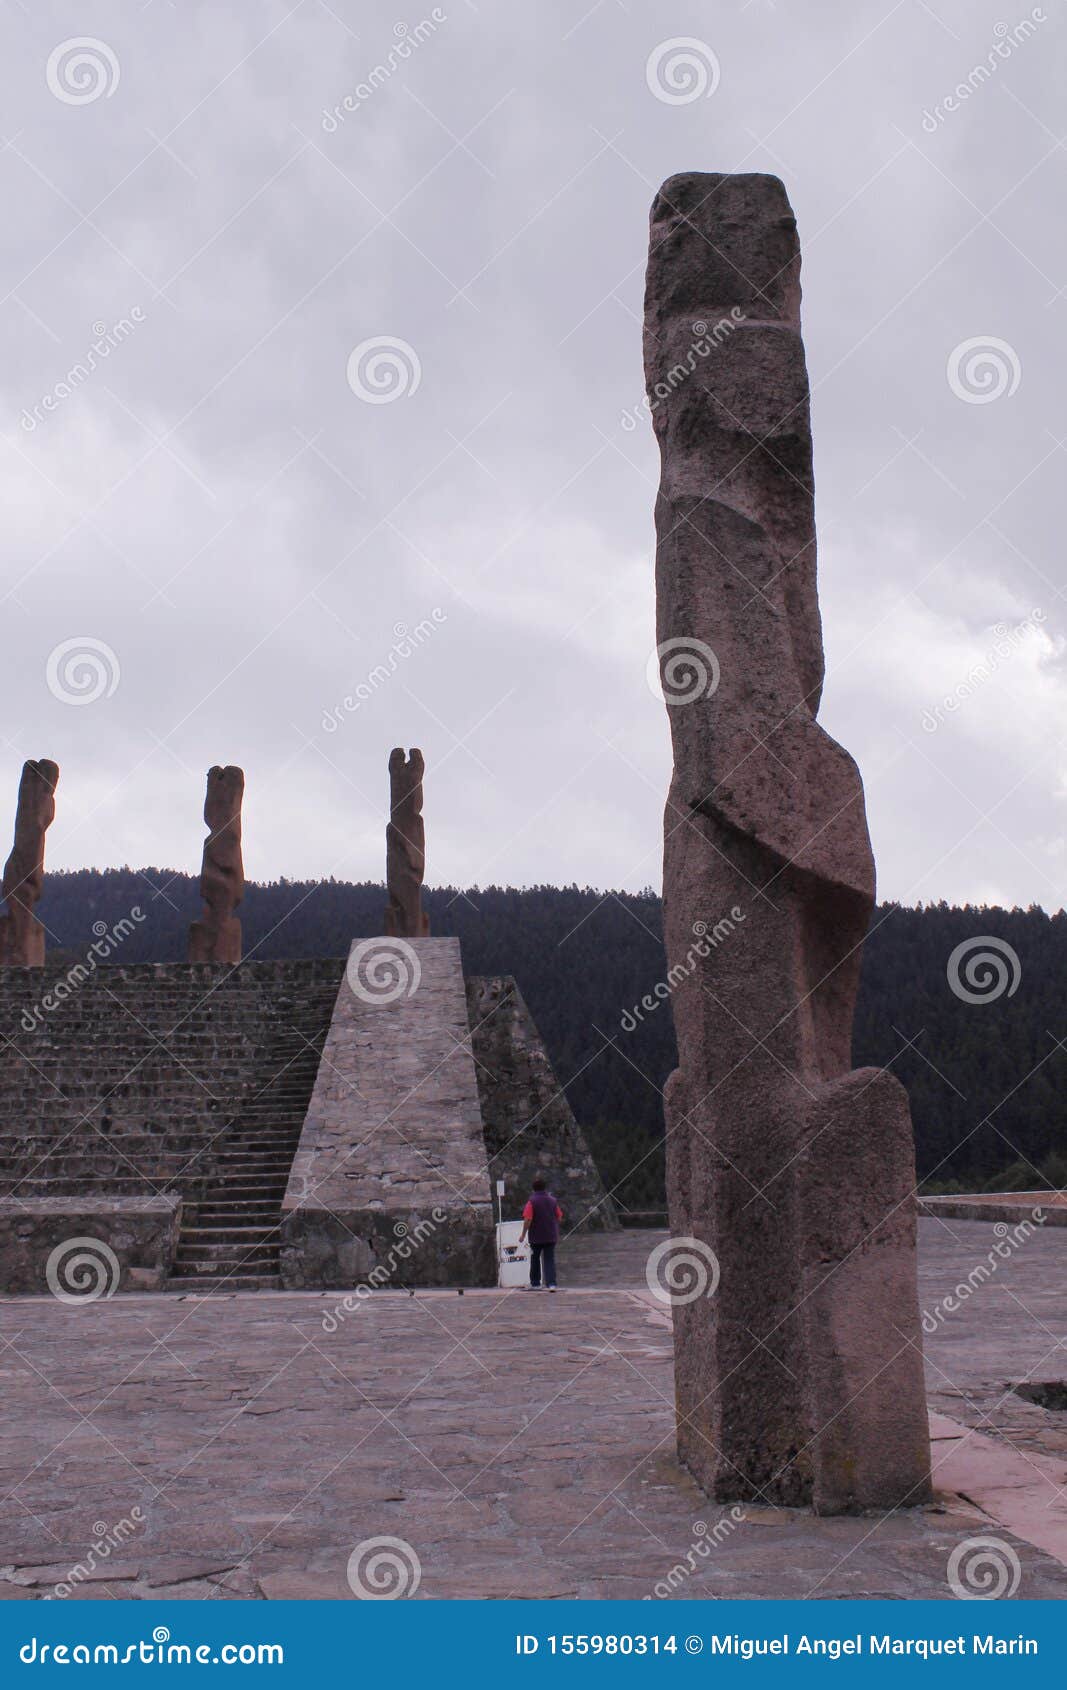 monuments in centro ceremonial otomi in estado de mexico